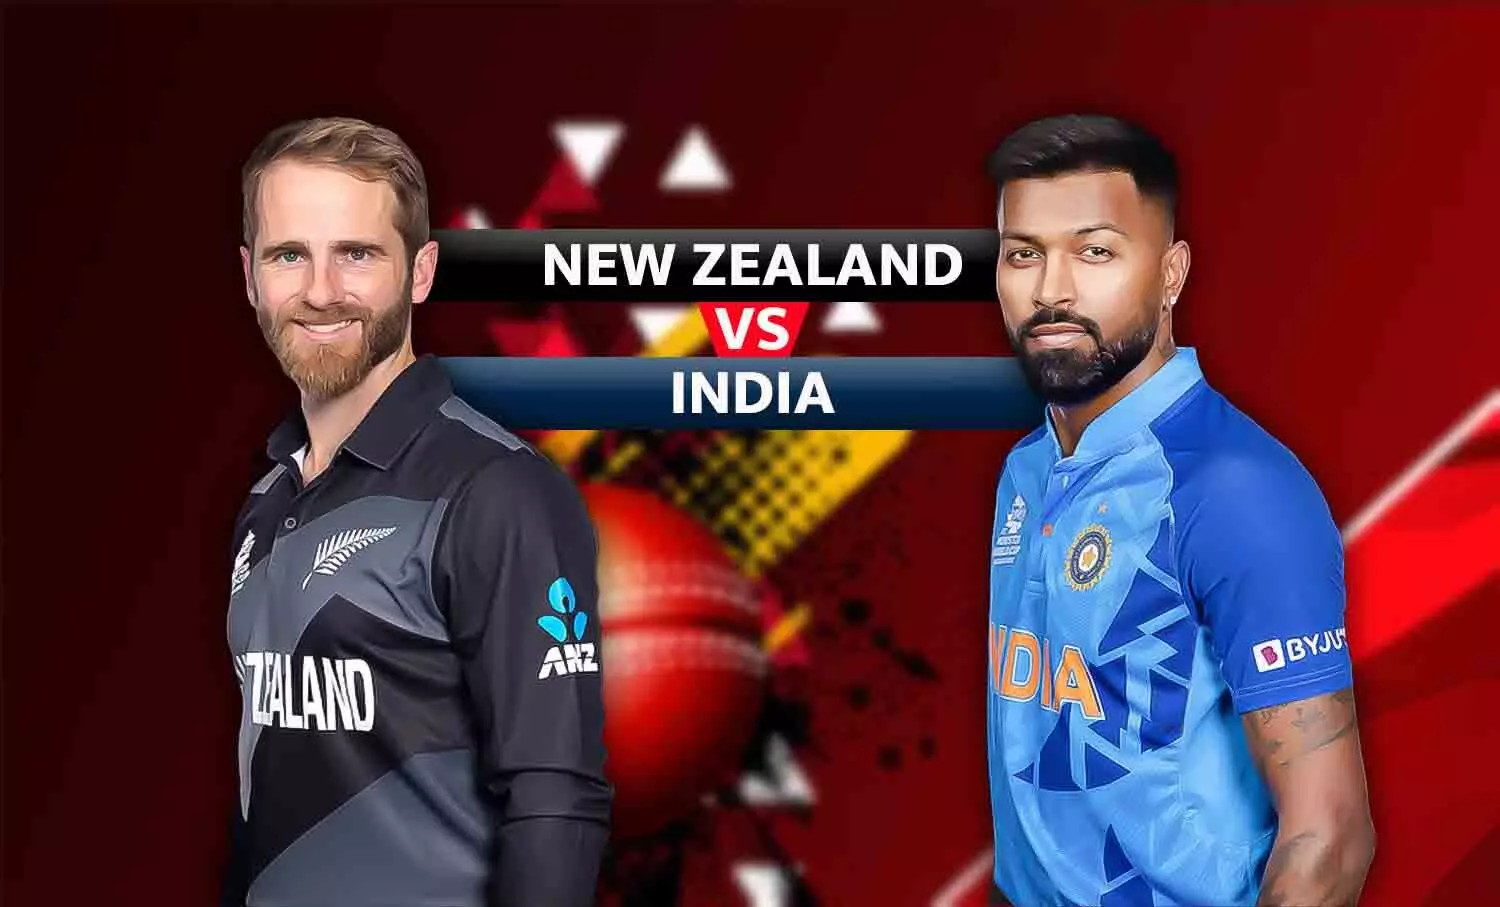 दूसरे टी20 में भारत ने न्यूजीलैंड को 65 रनों से हराया: सूर्या का दूसरा शतक, दीपक हुड्डा ने 10 रन देकर 4 विकेट लिए